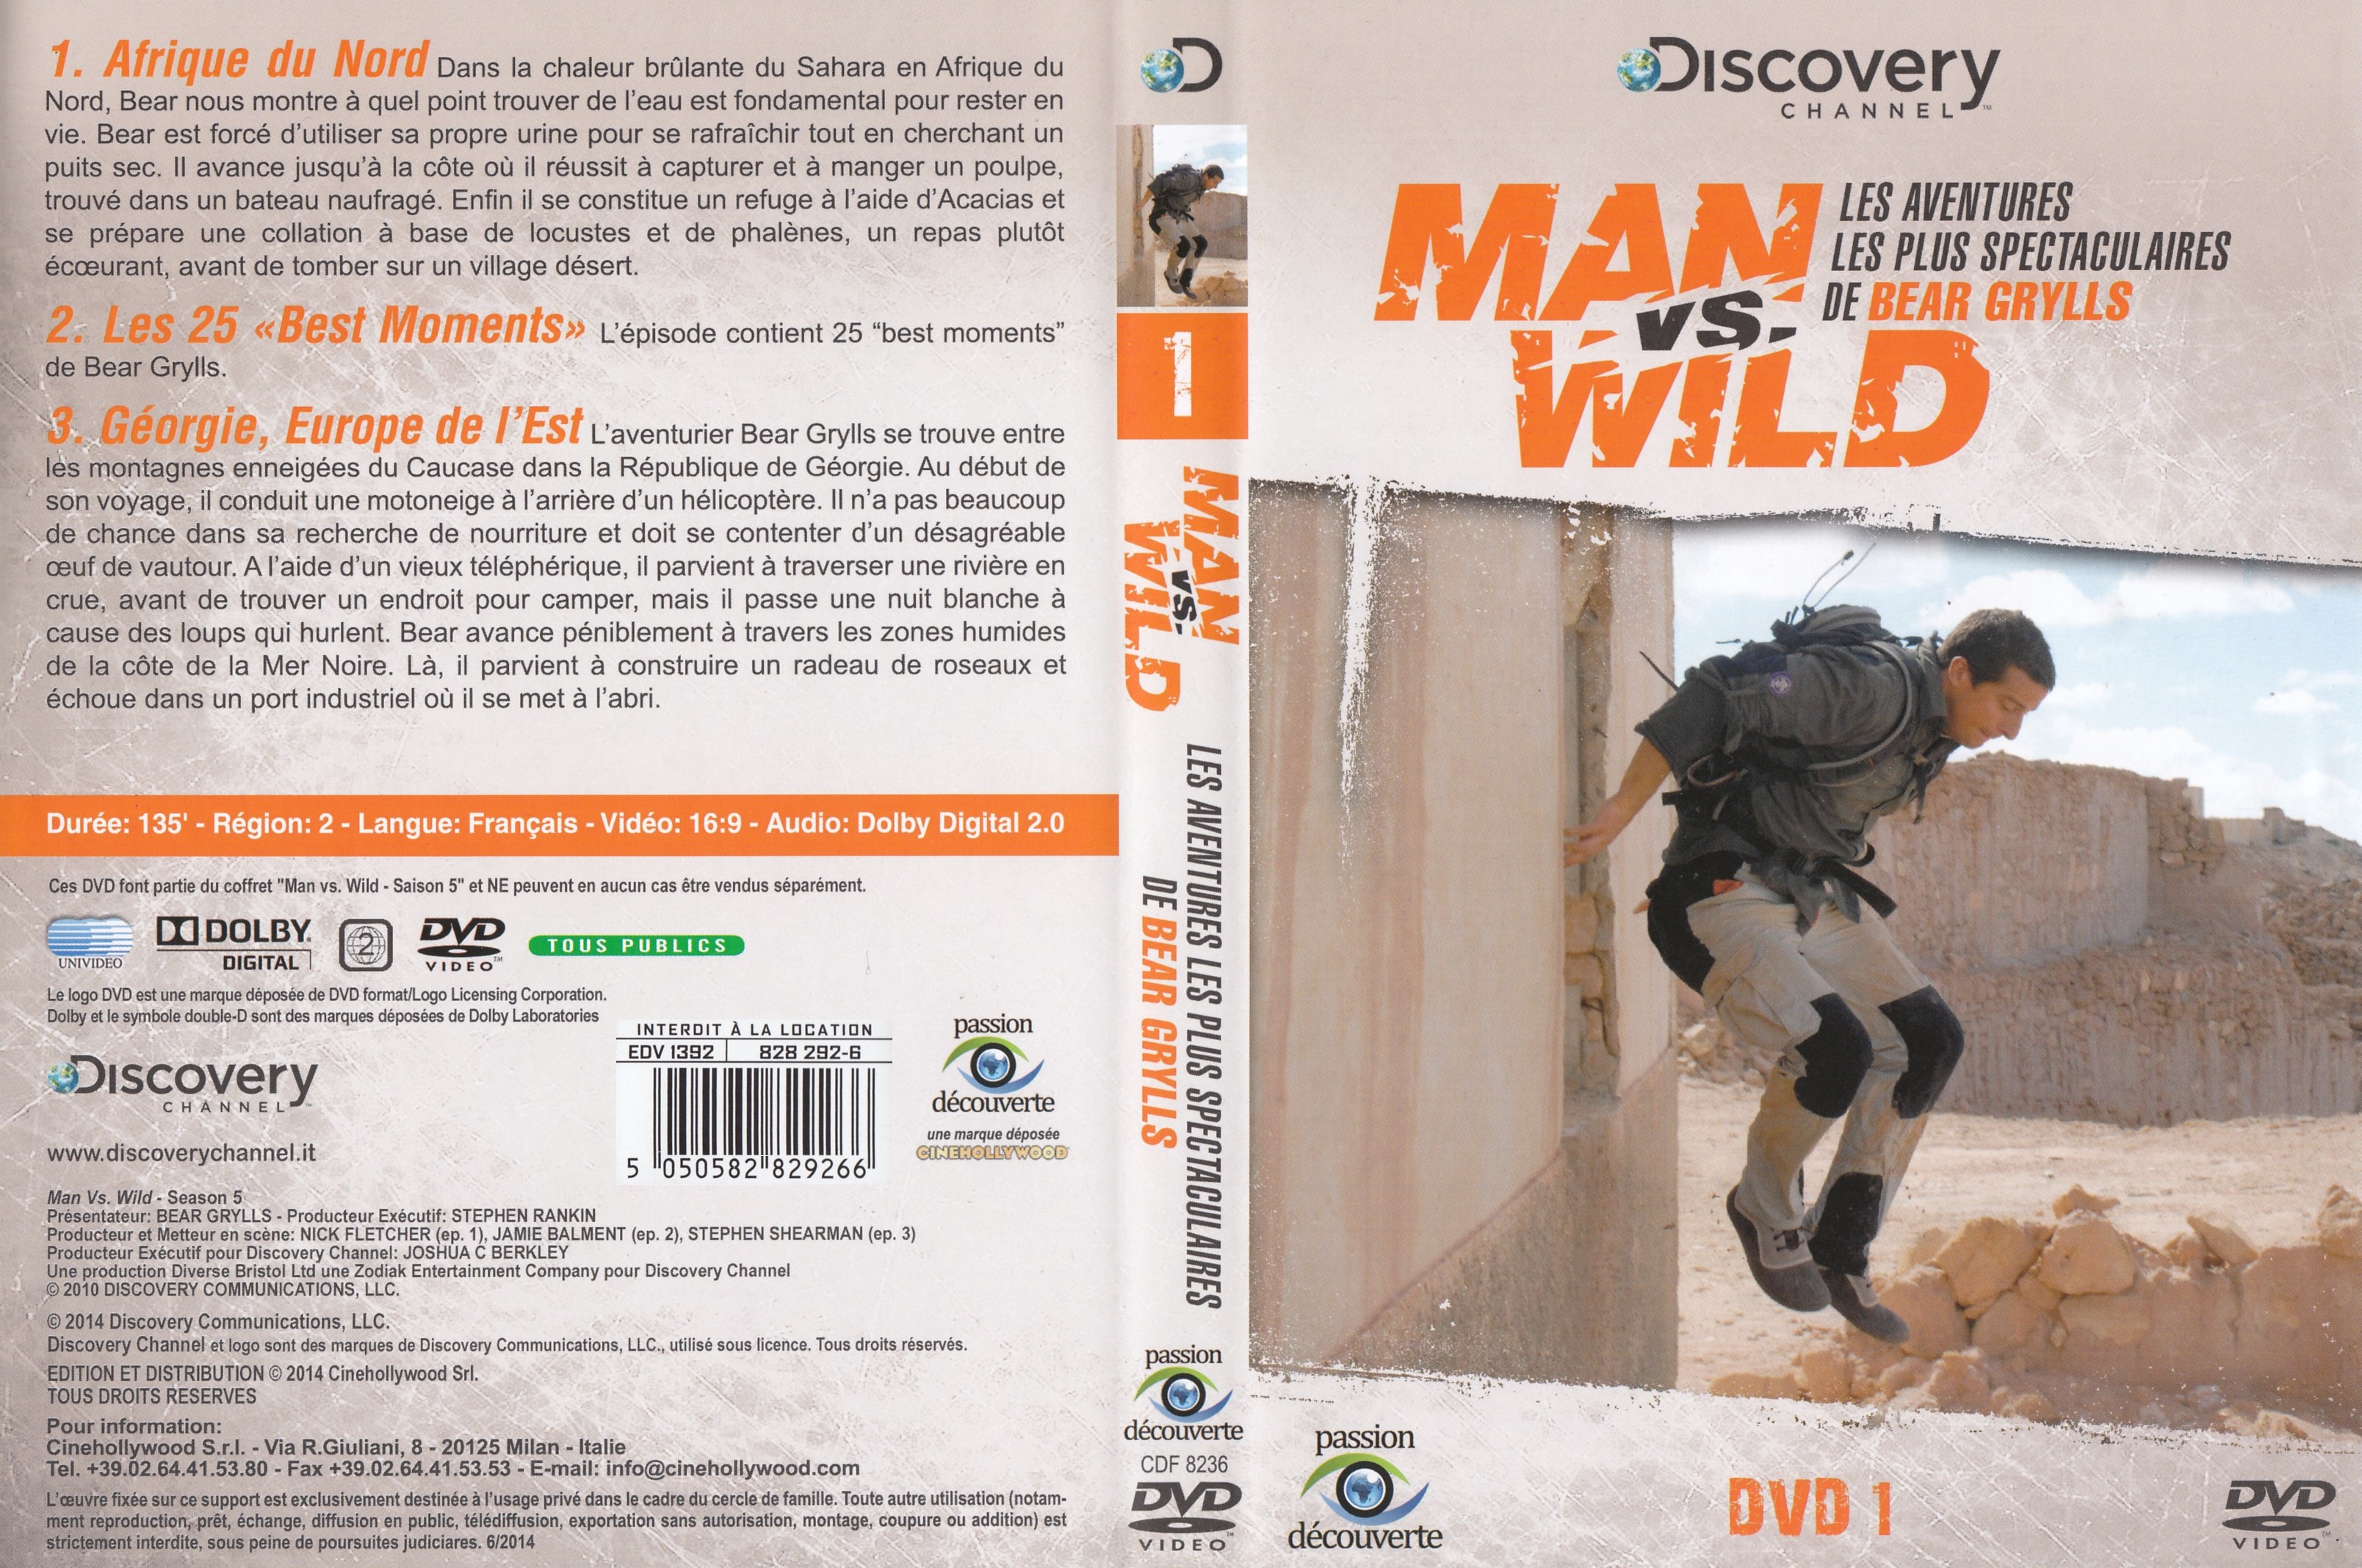 Jaquette DVD Man vs wild - Les aventures les plus spectaculaires de Bear Grylls DVD 1